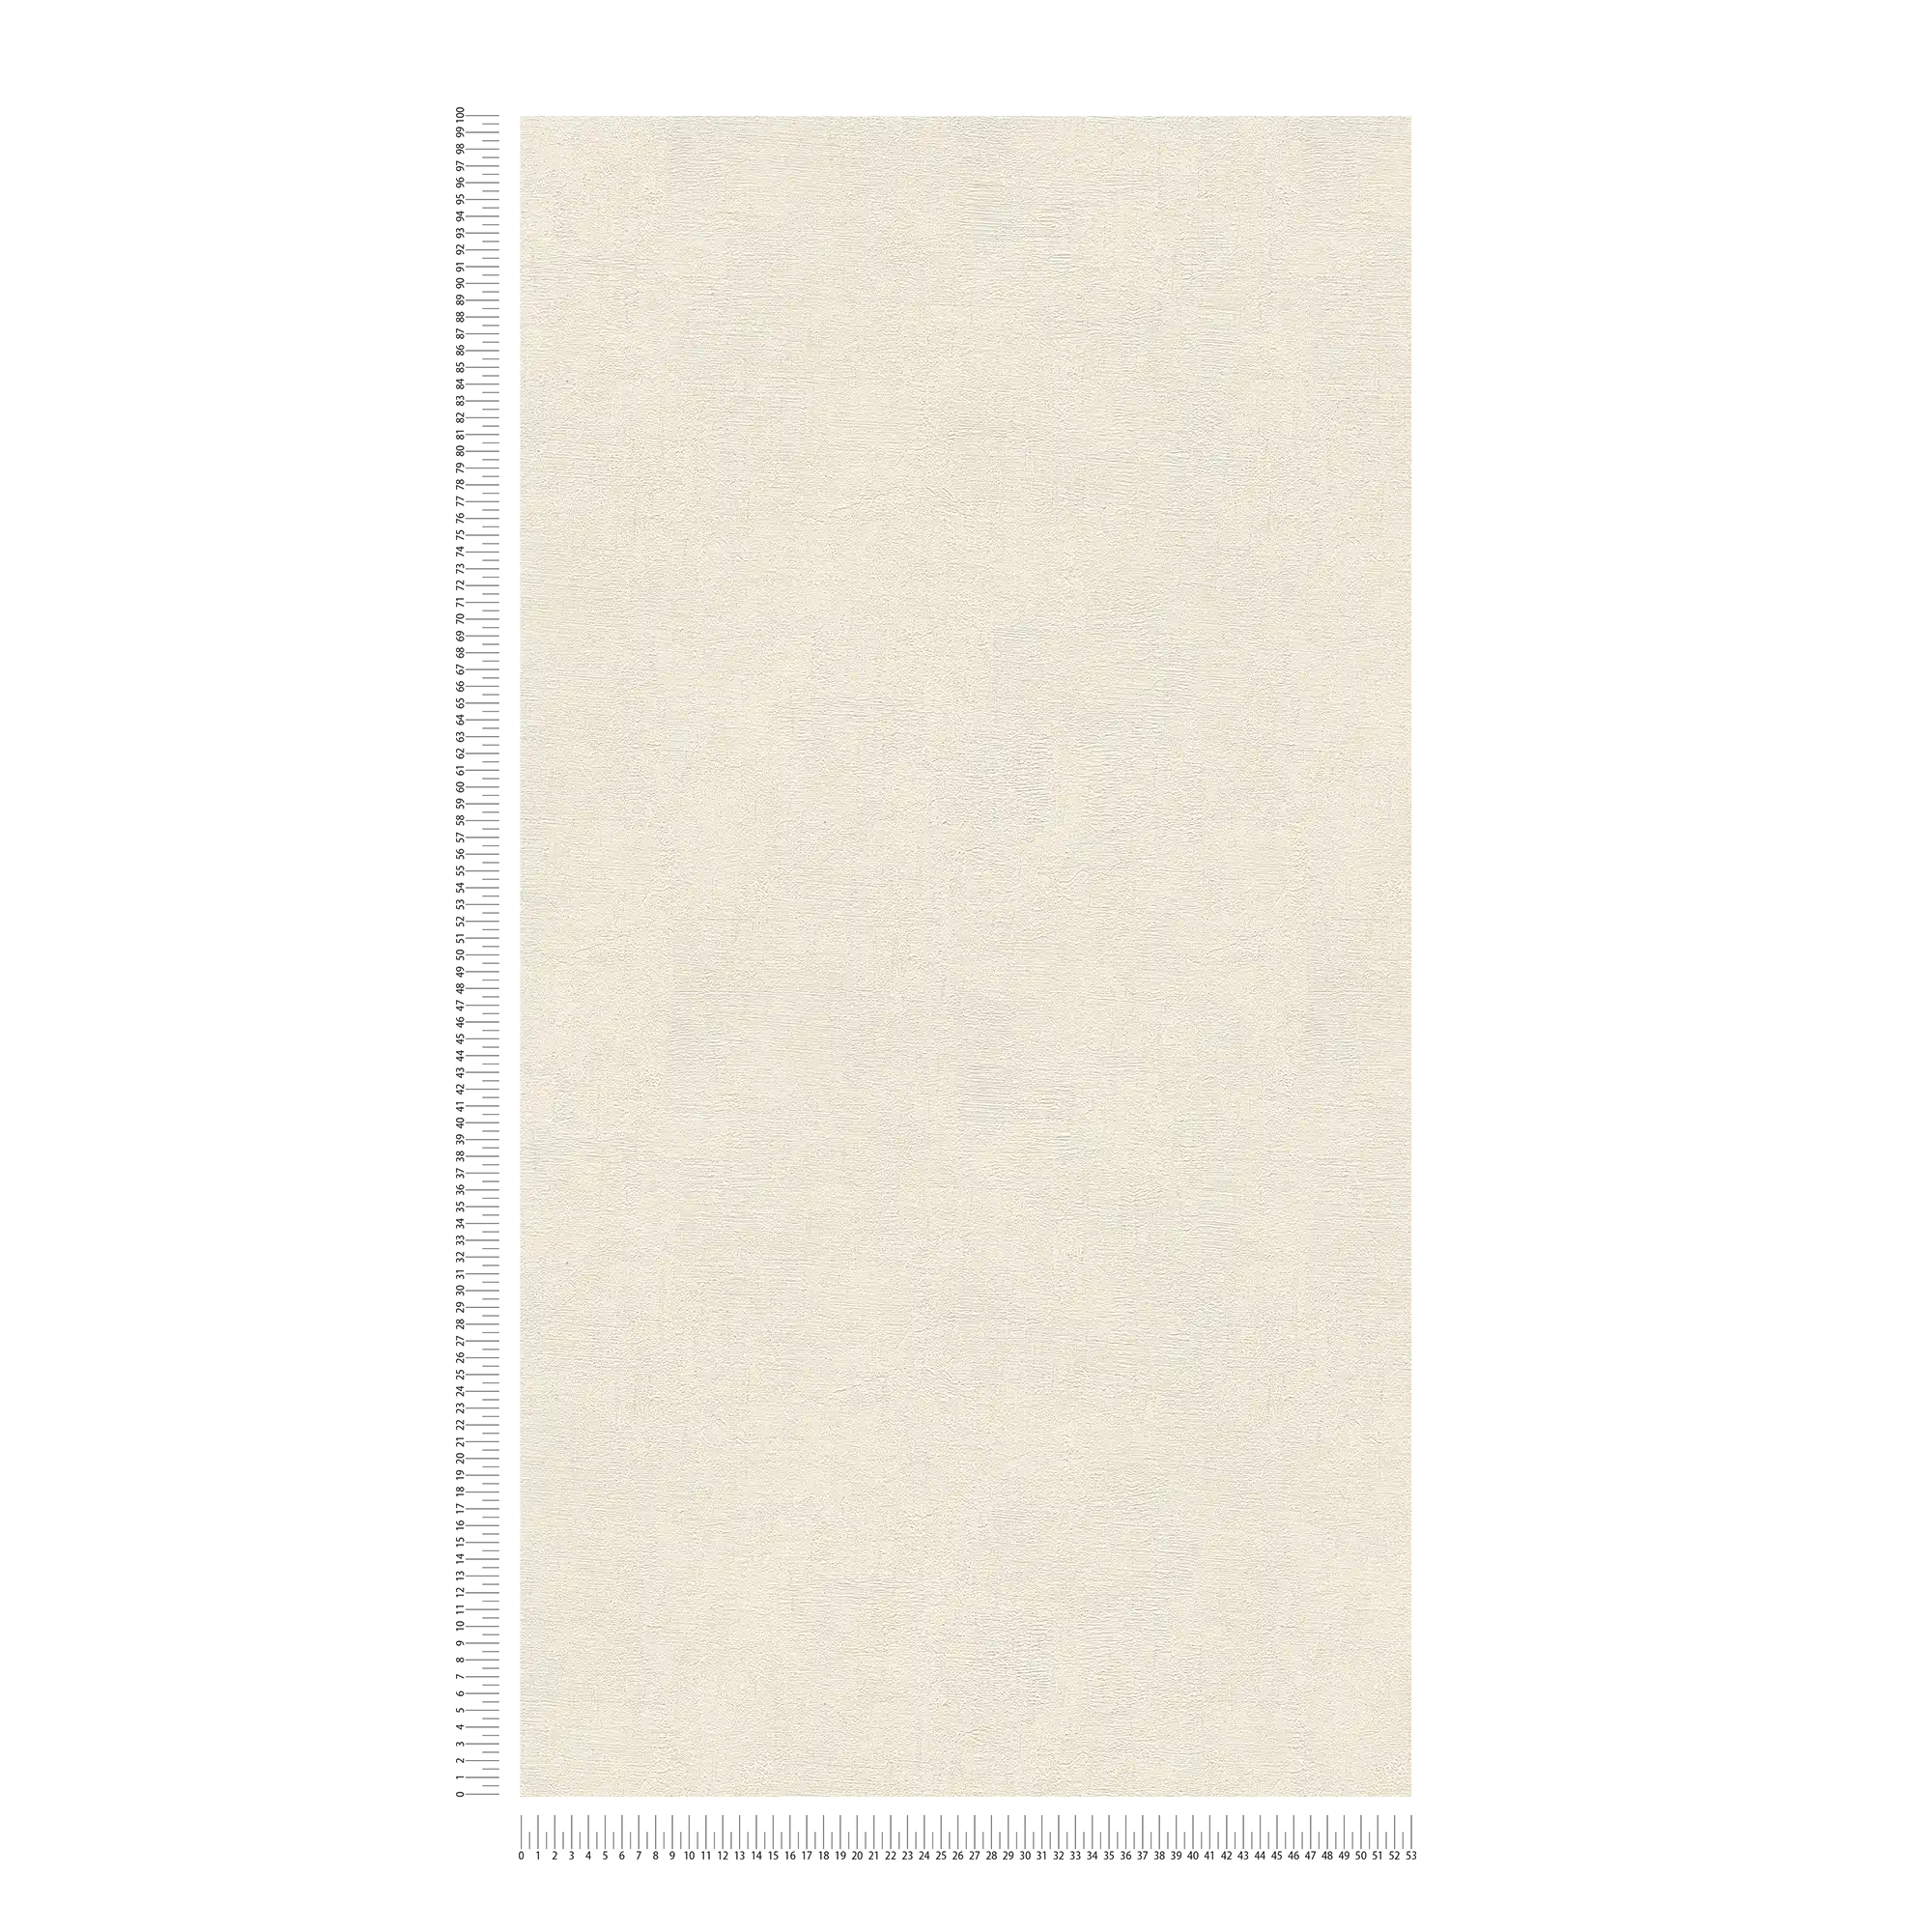             Carta da parati in tessuto non tessuto crema con effetto intonaco di Daniel HECHTER
        